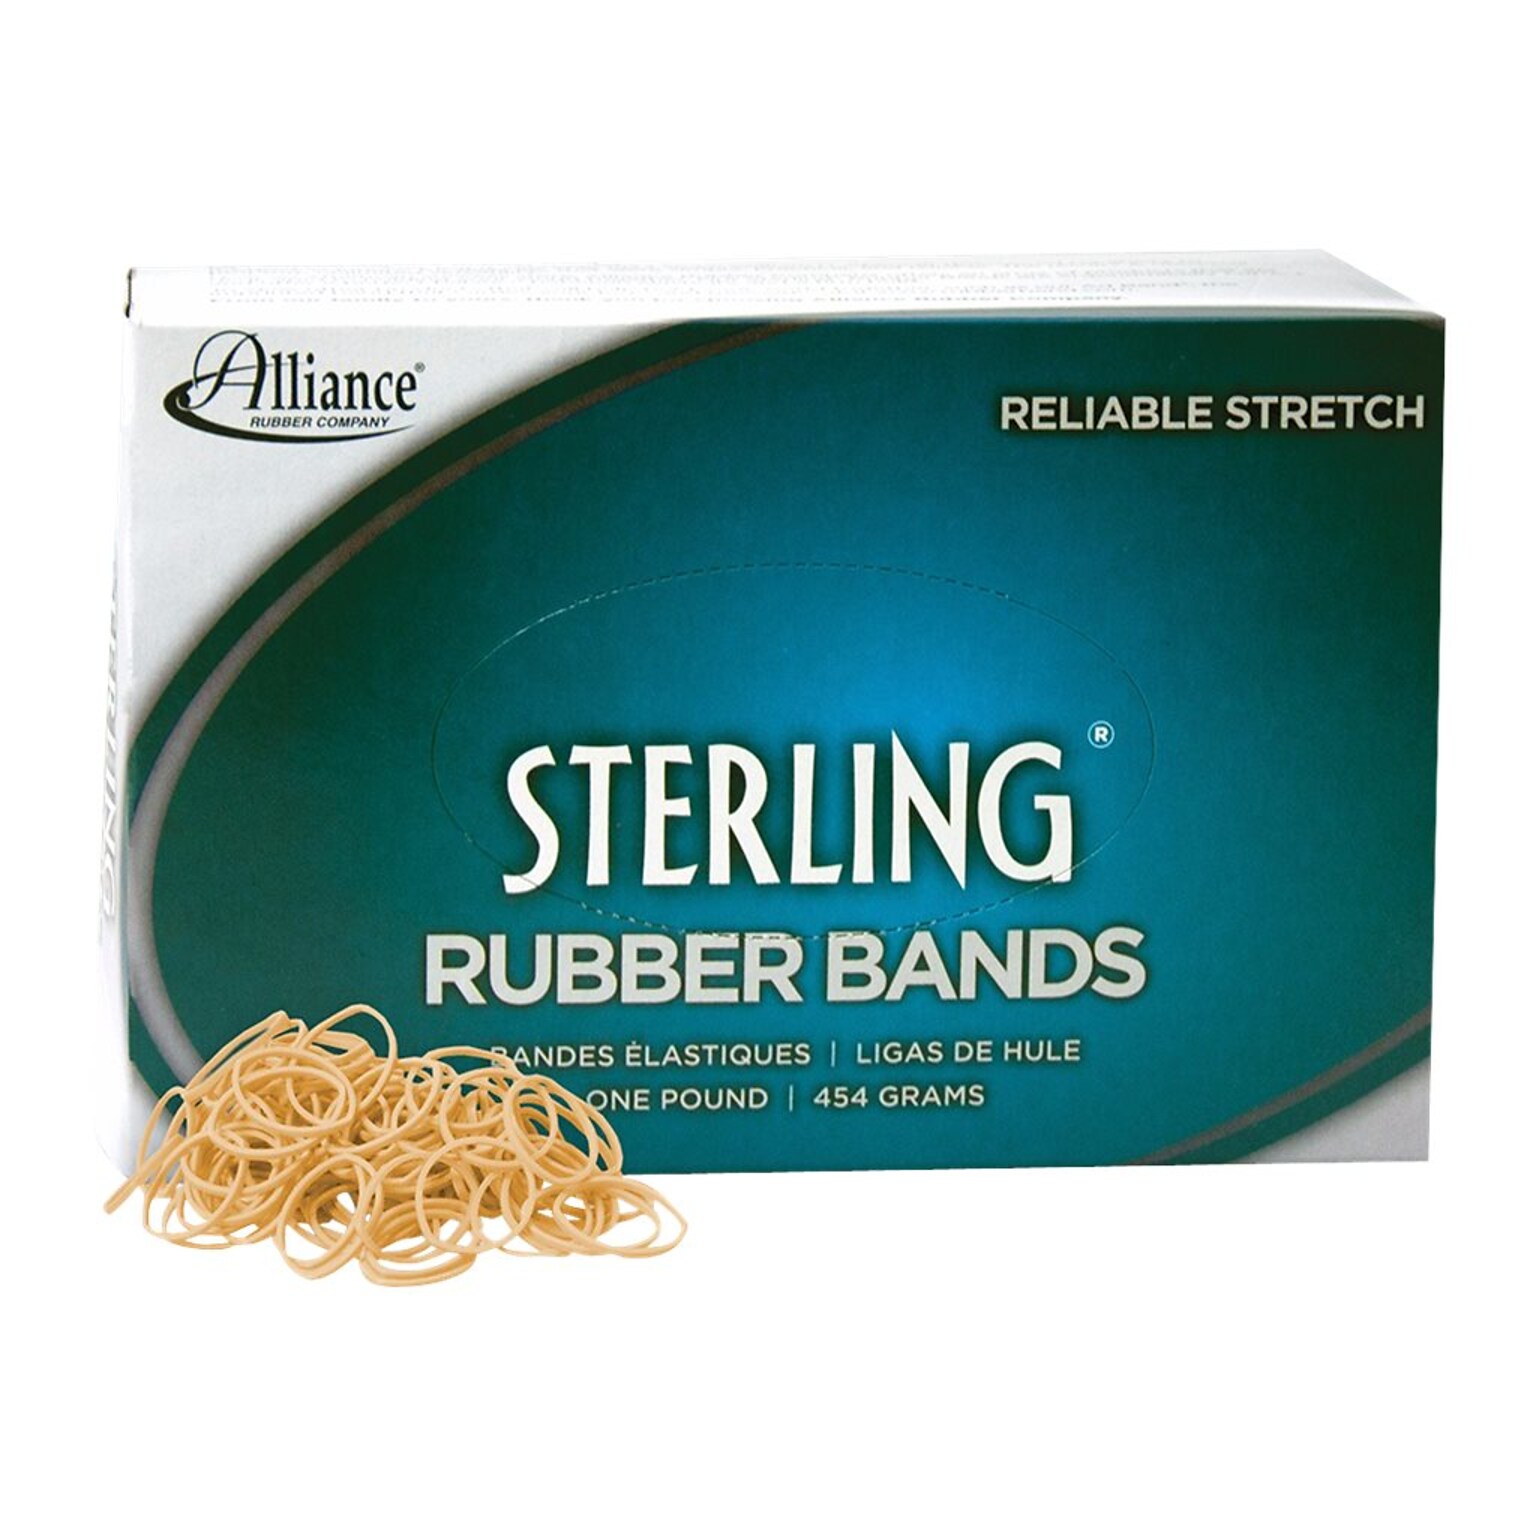 Alliance Sterling Multi-Purpose Rubber Bands, #10, 1-1/4L x 1/16W, 1 lb. Box, 5000/Box (24105)